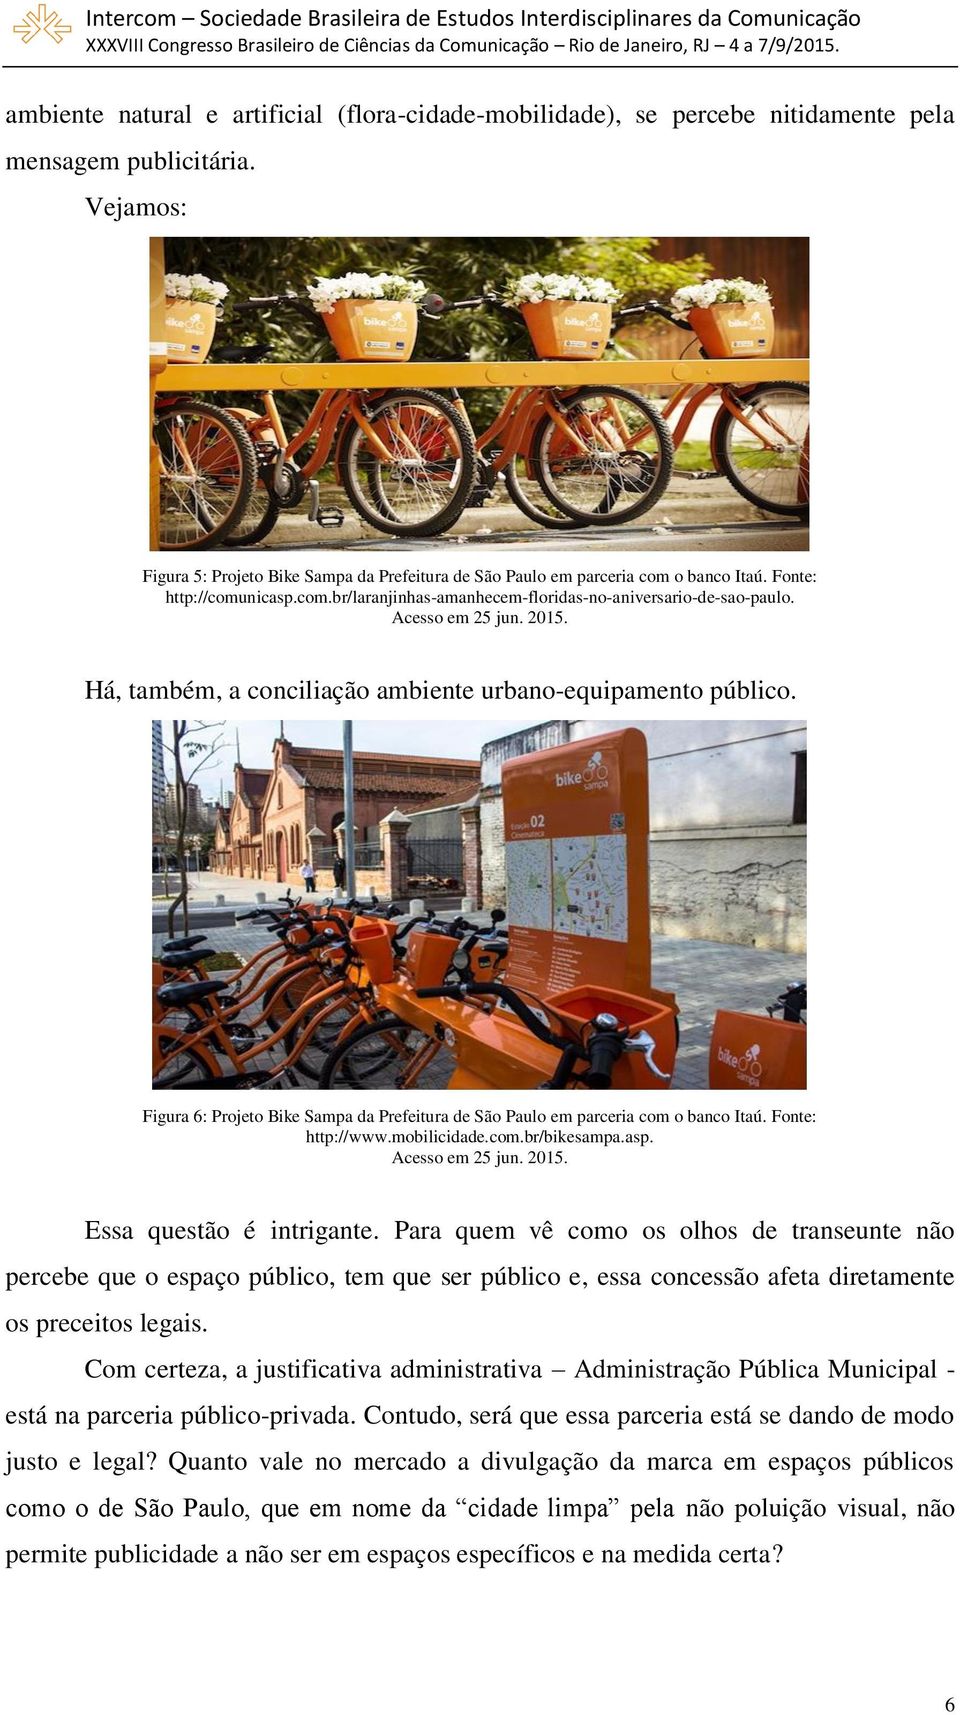 Acesso em 25 jun. 2015. Há, também, a conciliação ambiente urbano-equipamento público. Figura 6: Projeto Bike Sampa da Prefeitura de São Paulo em parceria com o banco Itaú. Fonte: http://www.